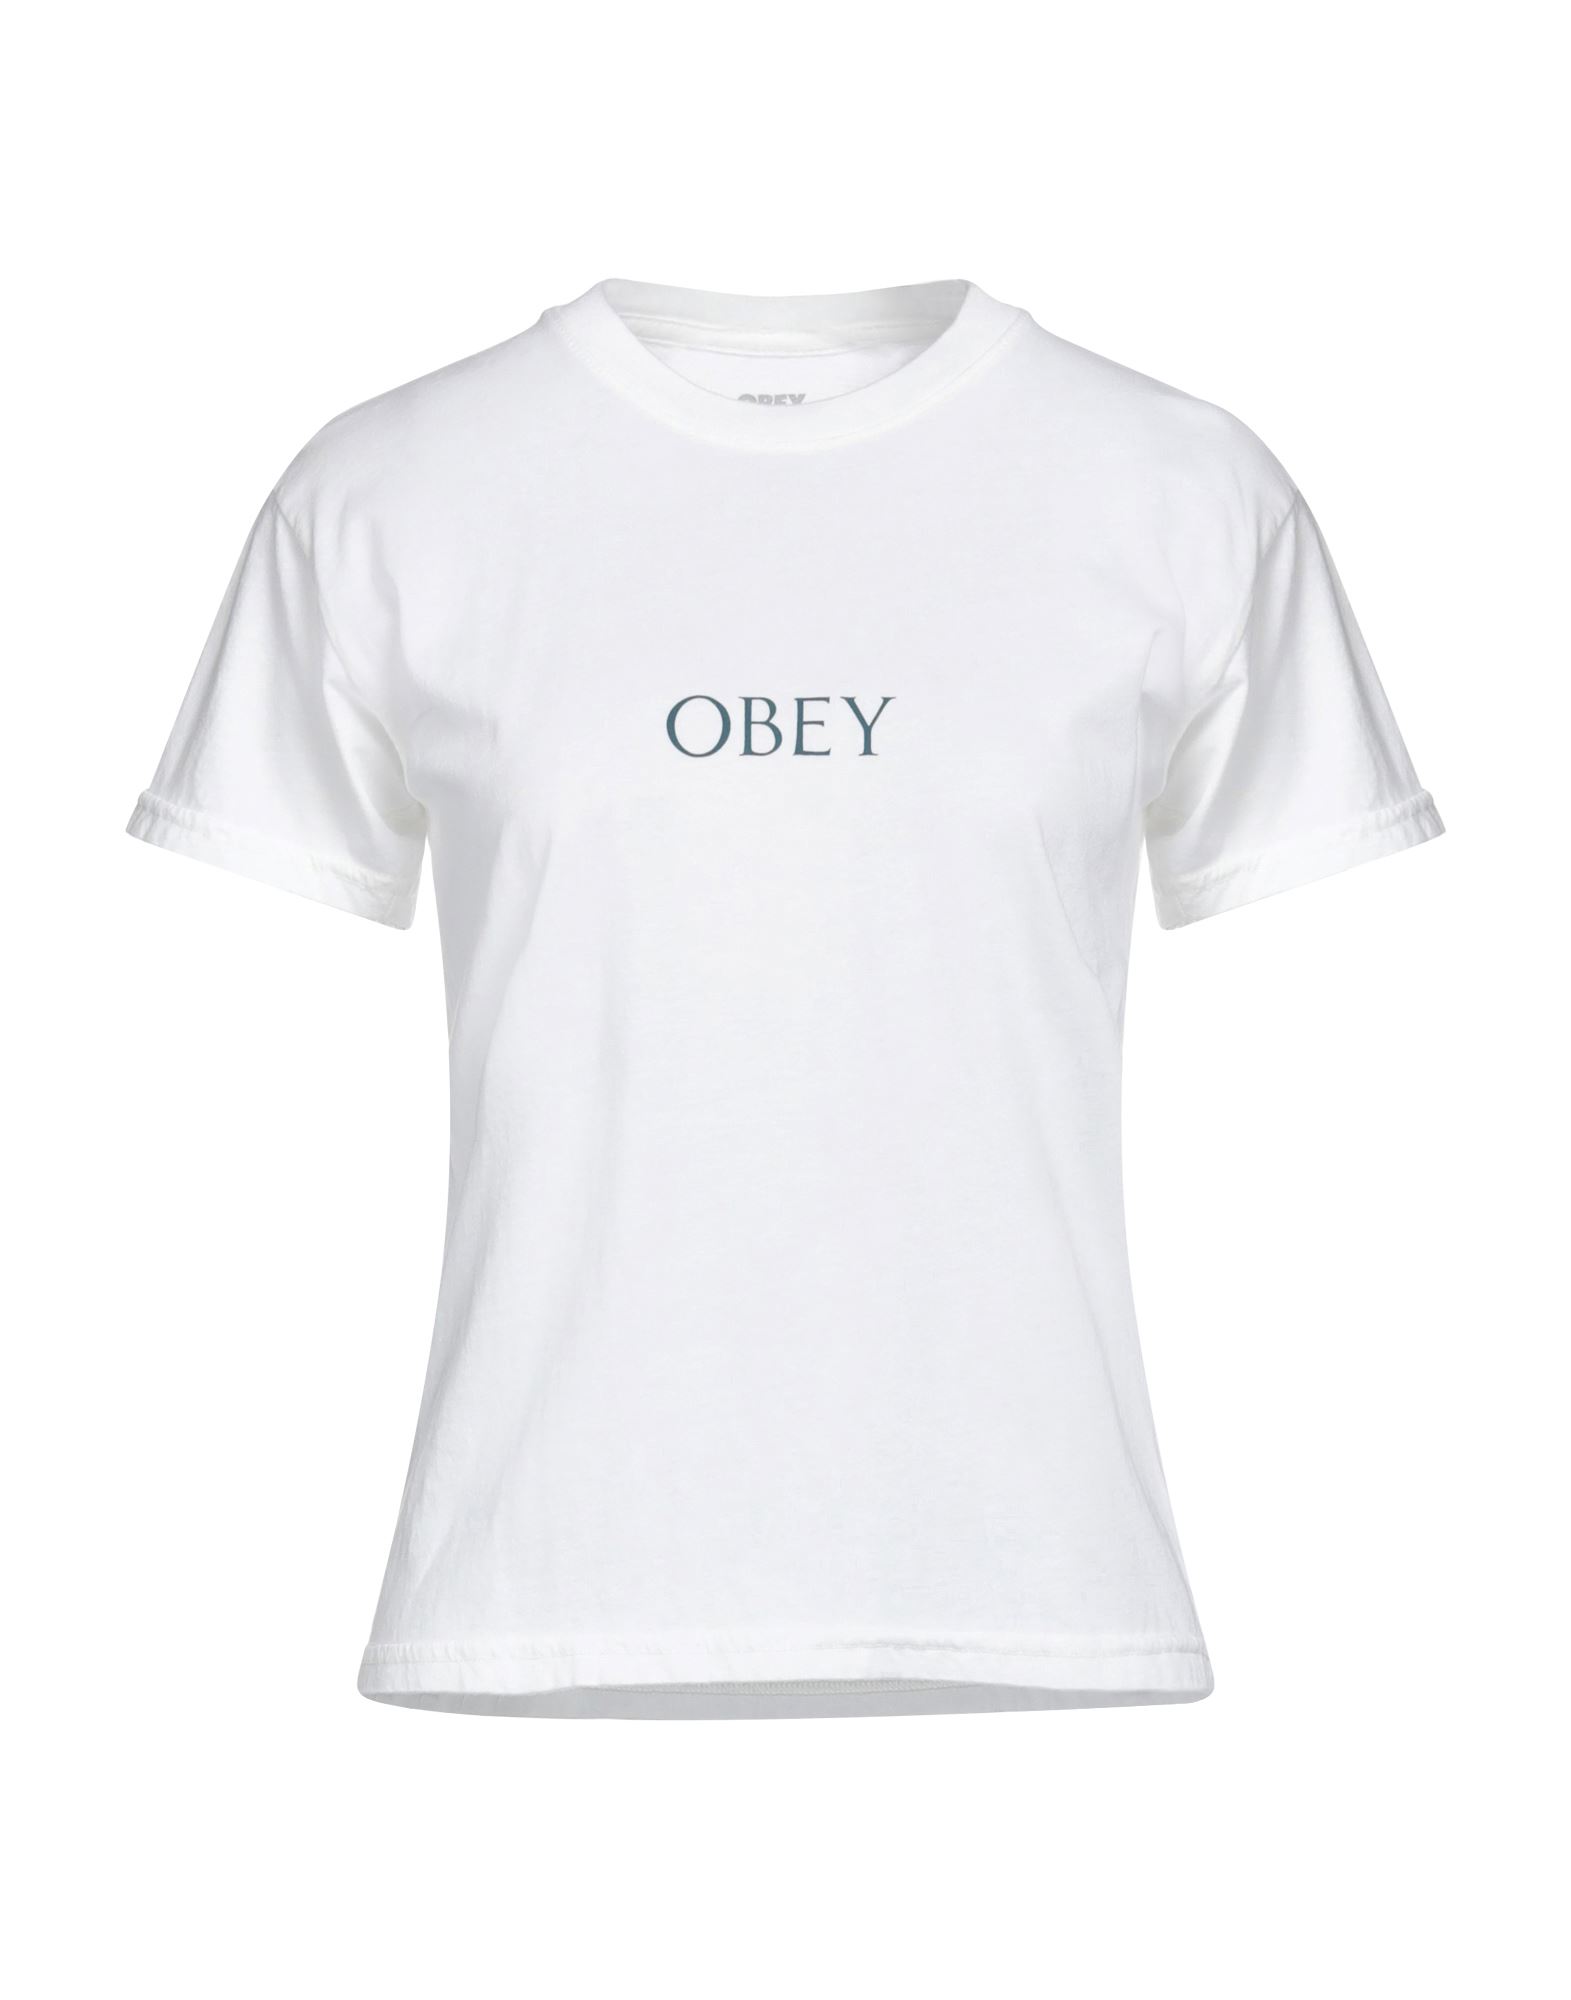 OBEY T-shirts Damen Weiß von OBEY